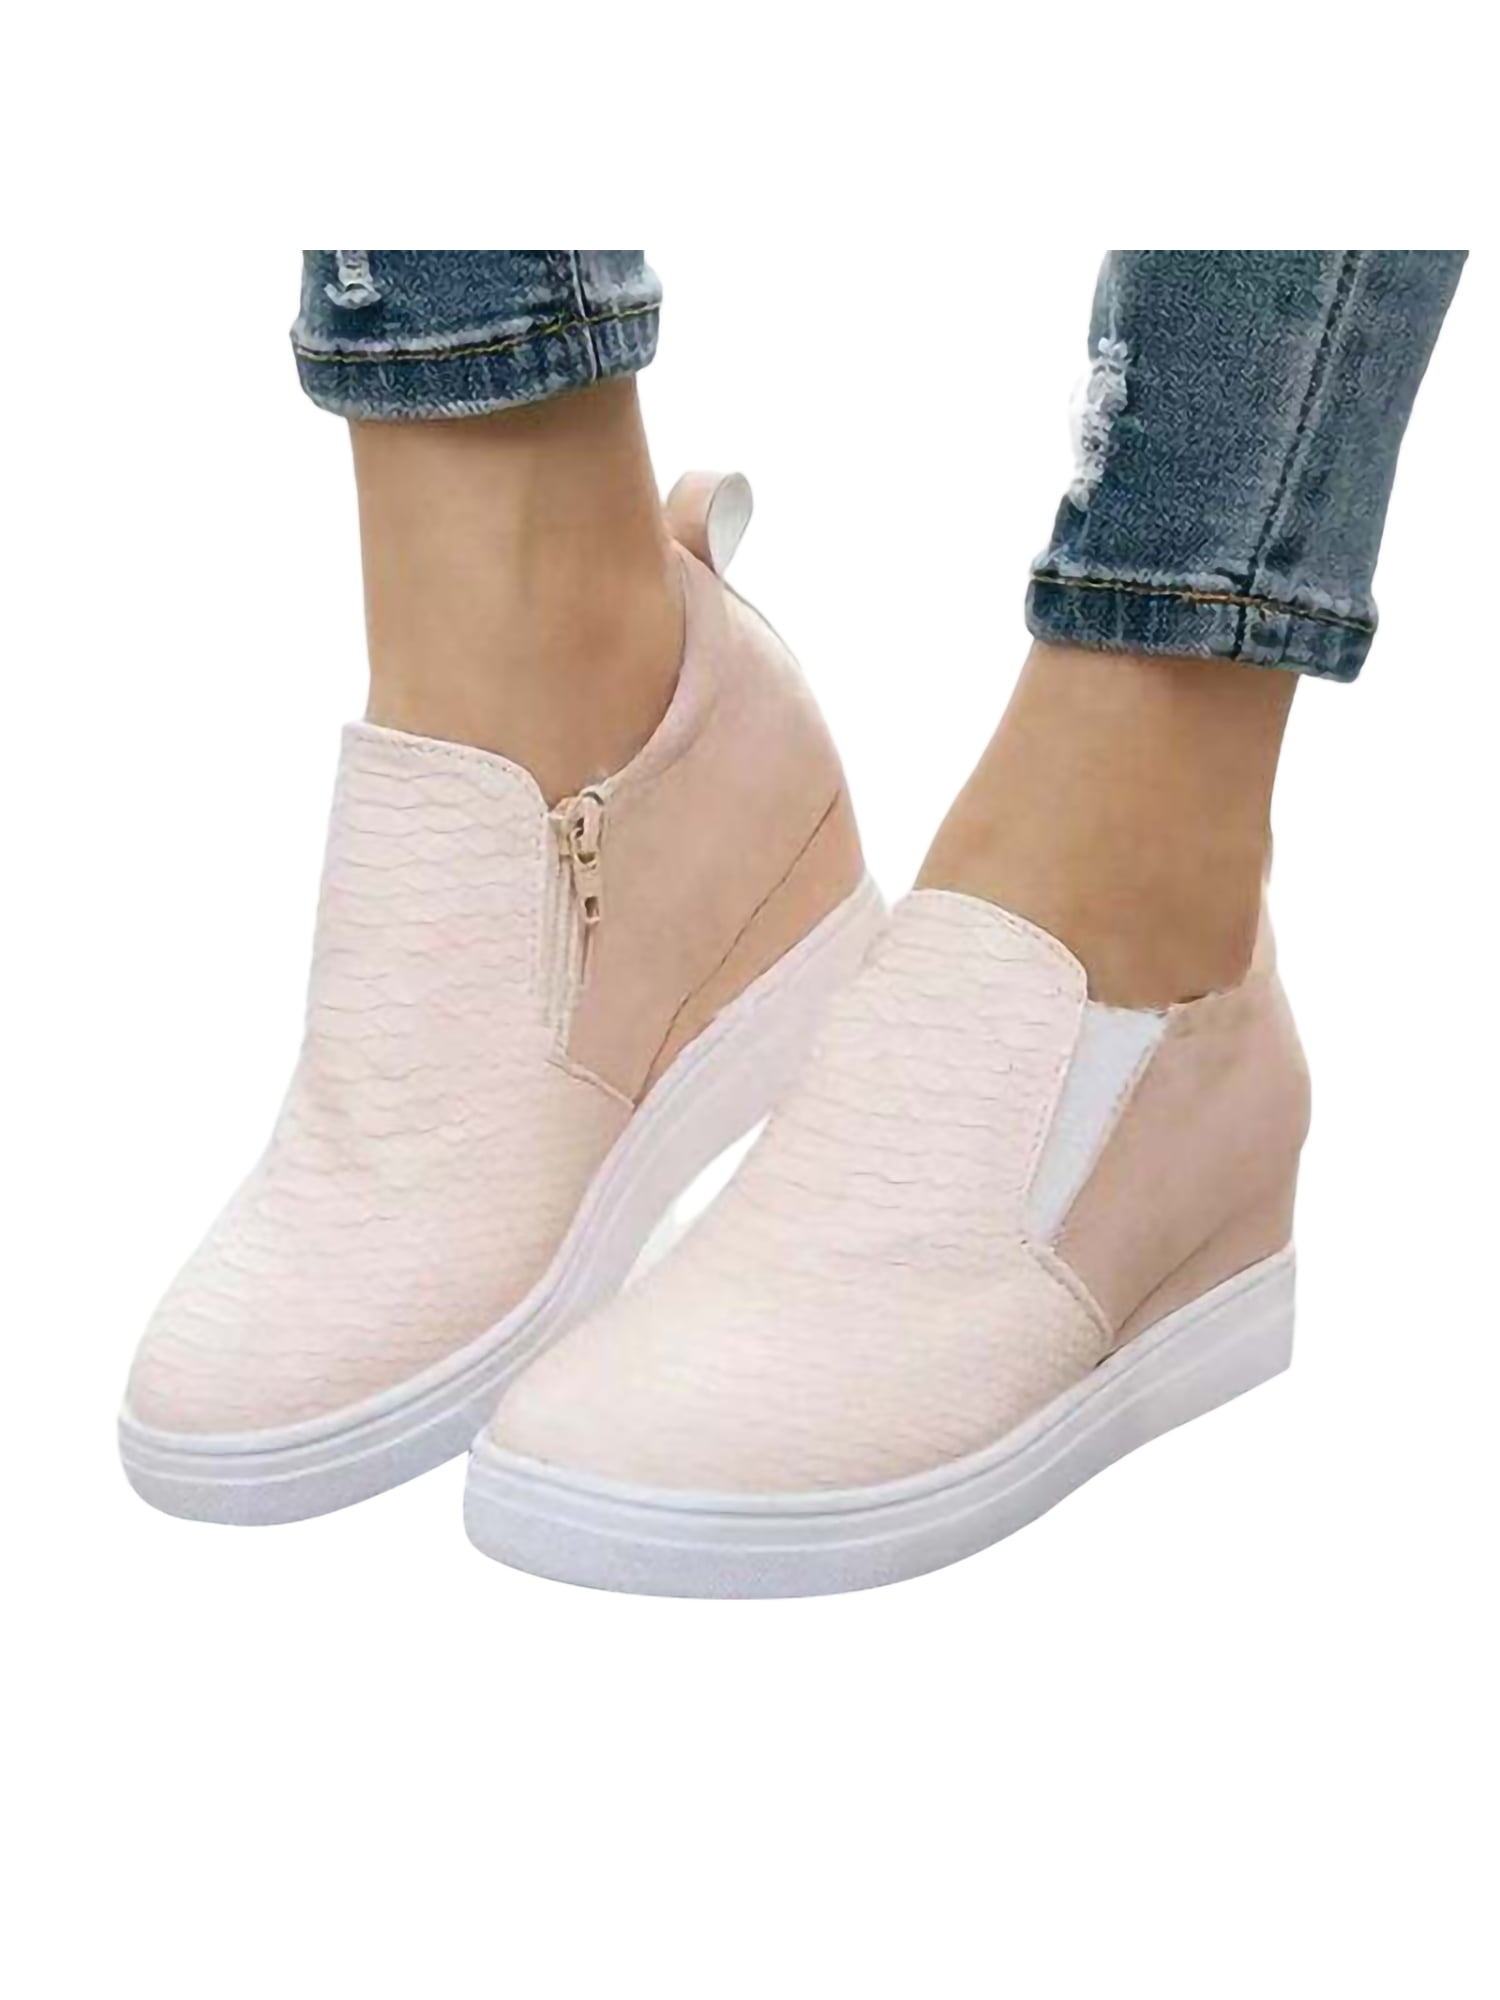 New Womens lace up Sneakers Sports Comfort Rivet Hidden Wedge Heel High Top Shoe